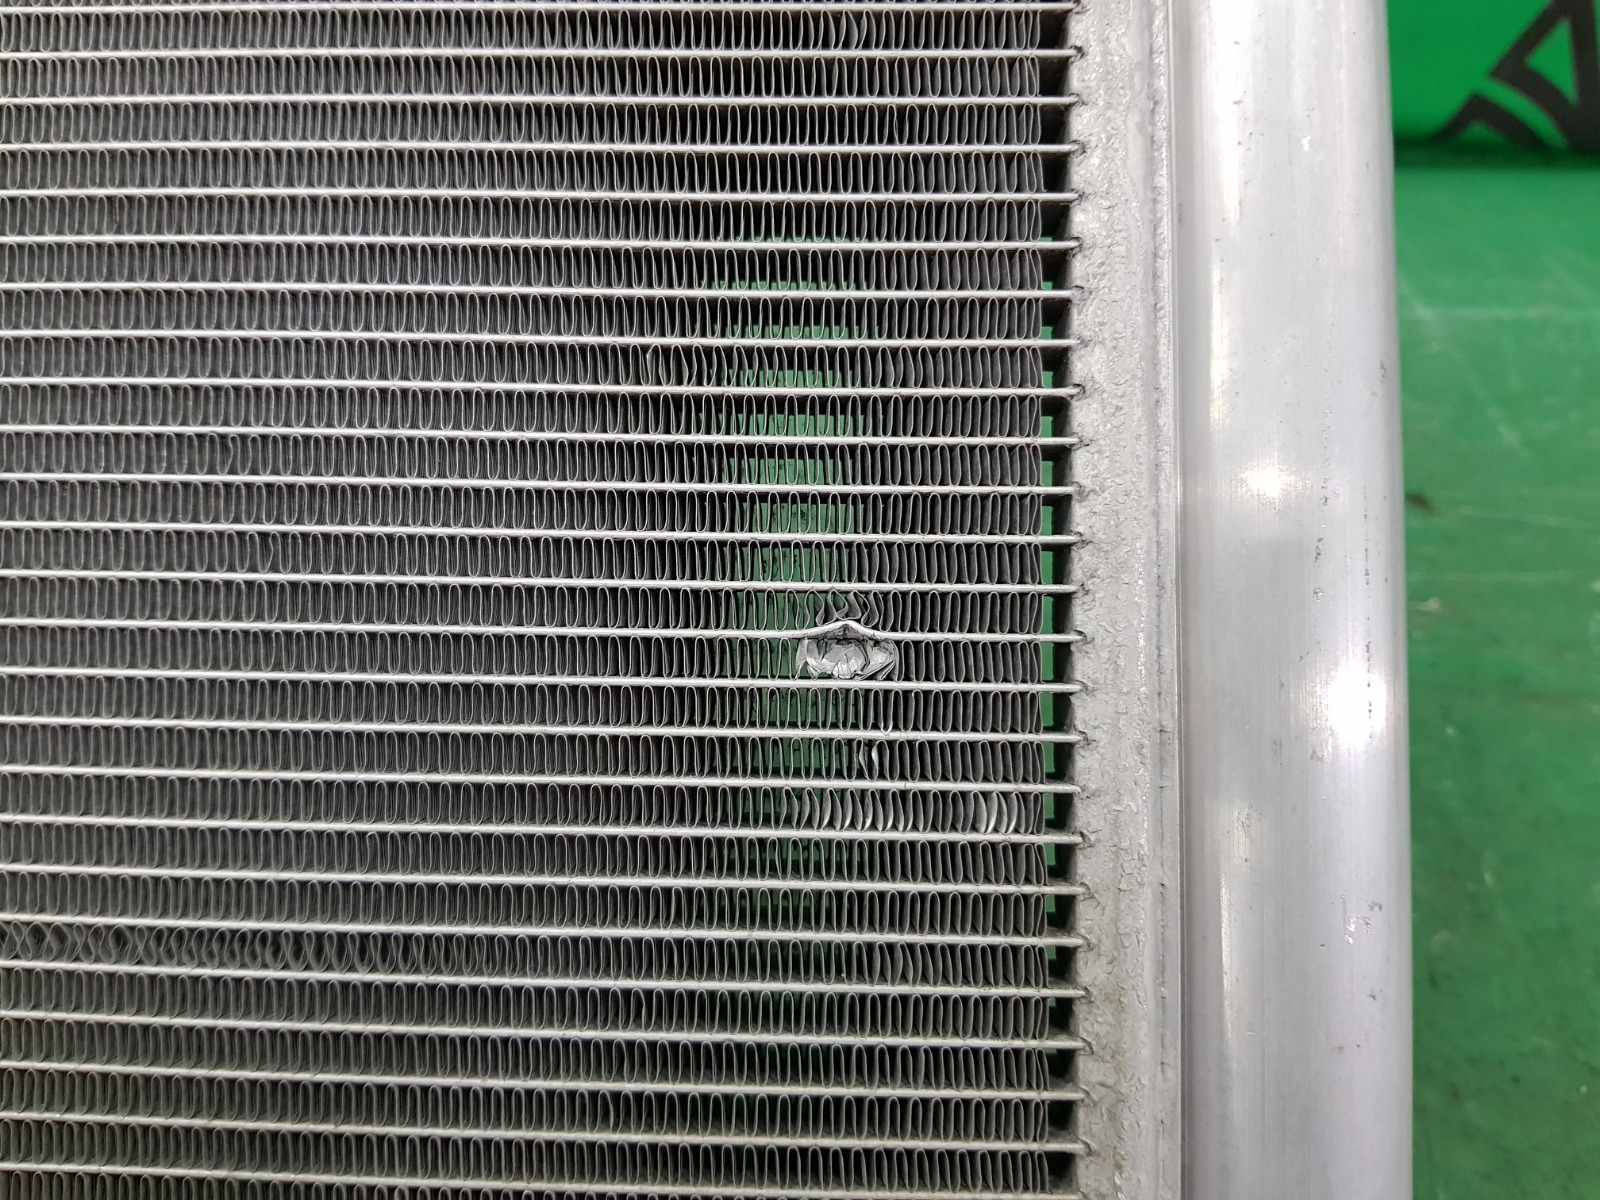 Радиатор кондиционера RAV4 2012-2019 4 CA40